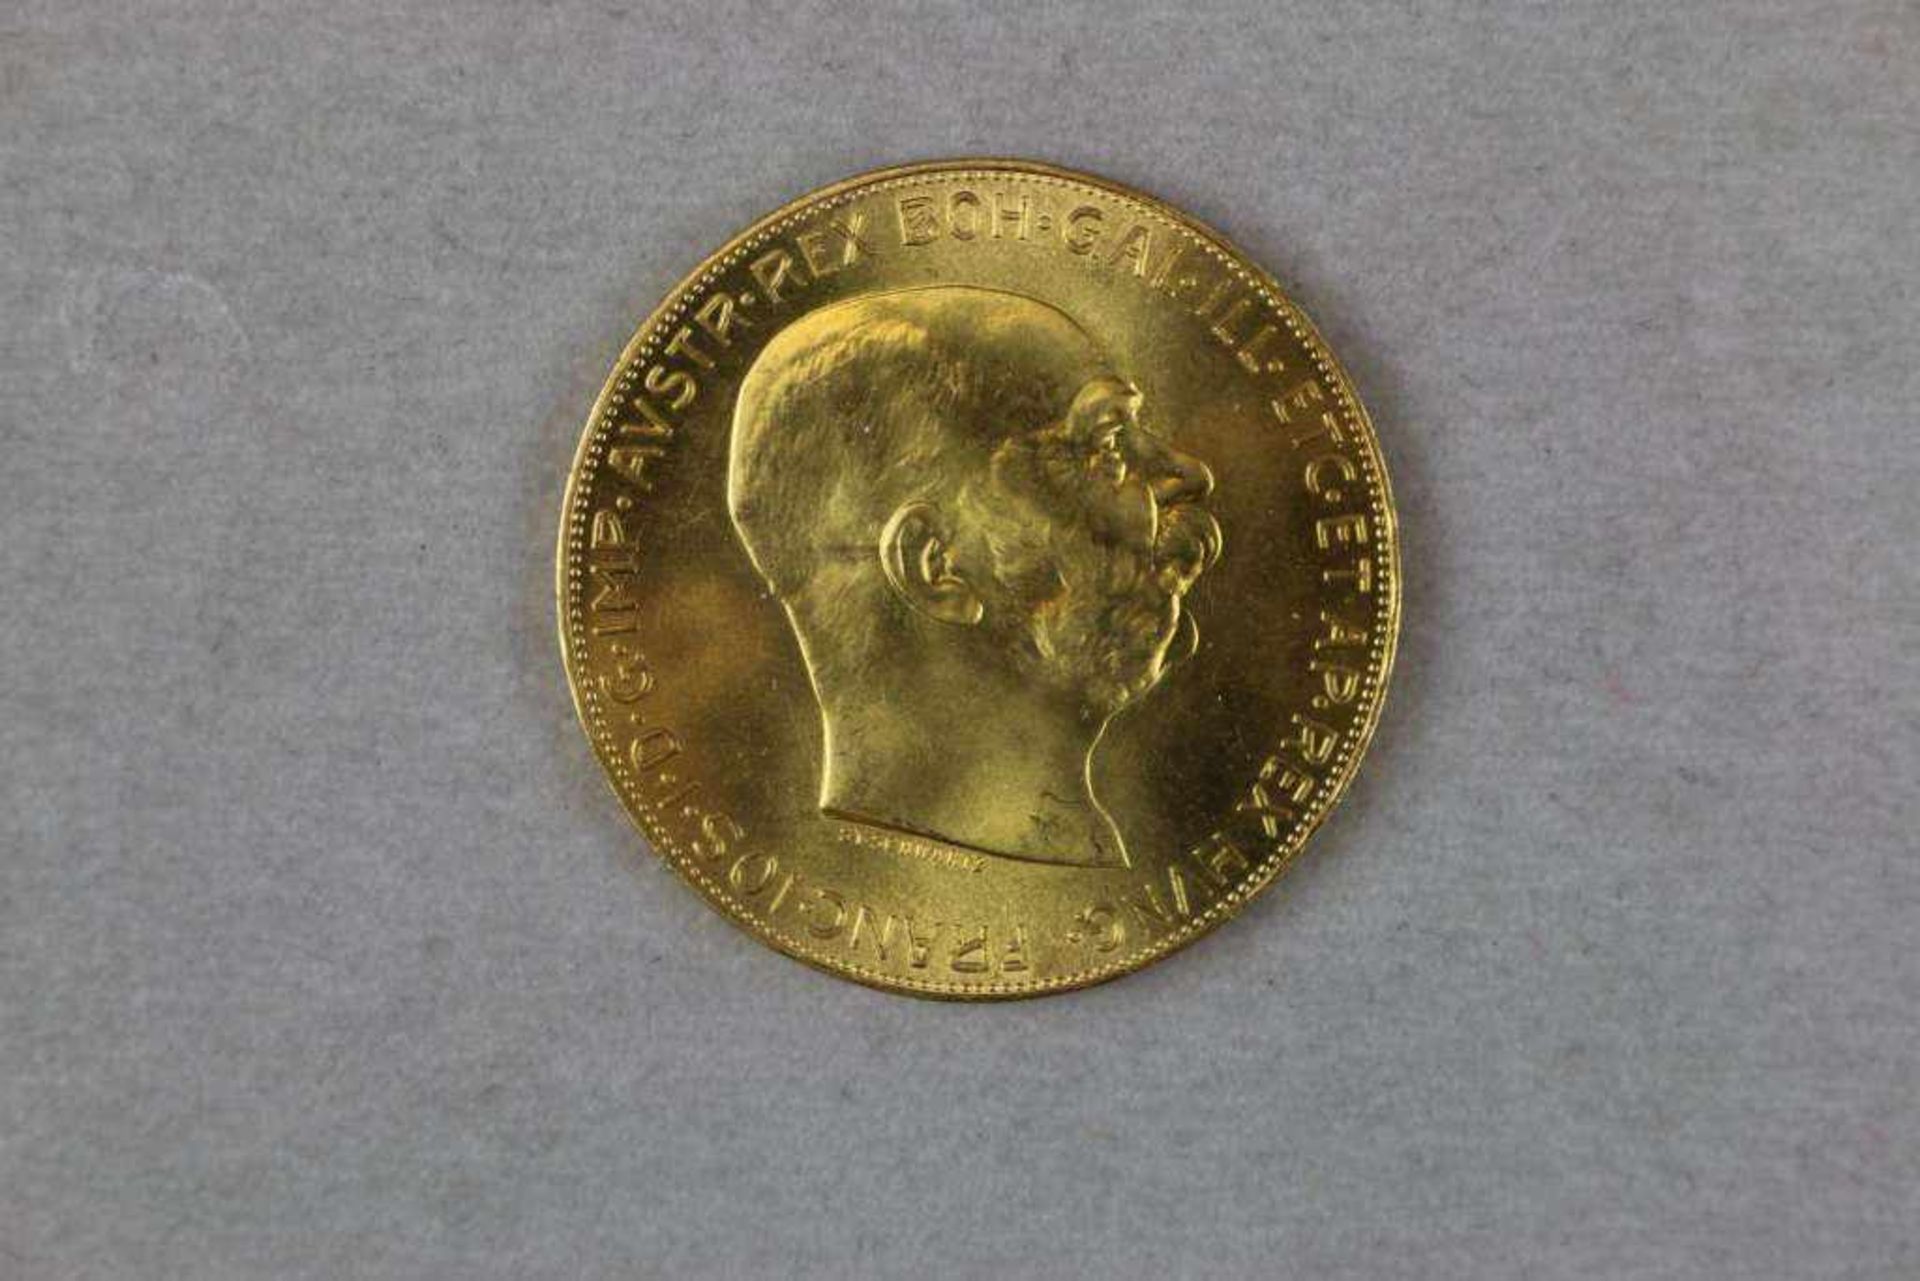 Goldmünze 100 Kronen Österreich Kaiser Franz Joseph 1915, Bruttogewicht: 33,875 g, Feingehalt: 900/